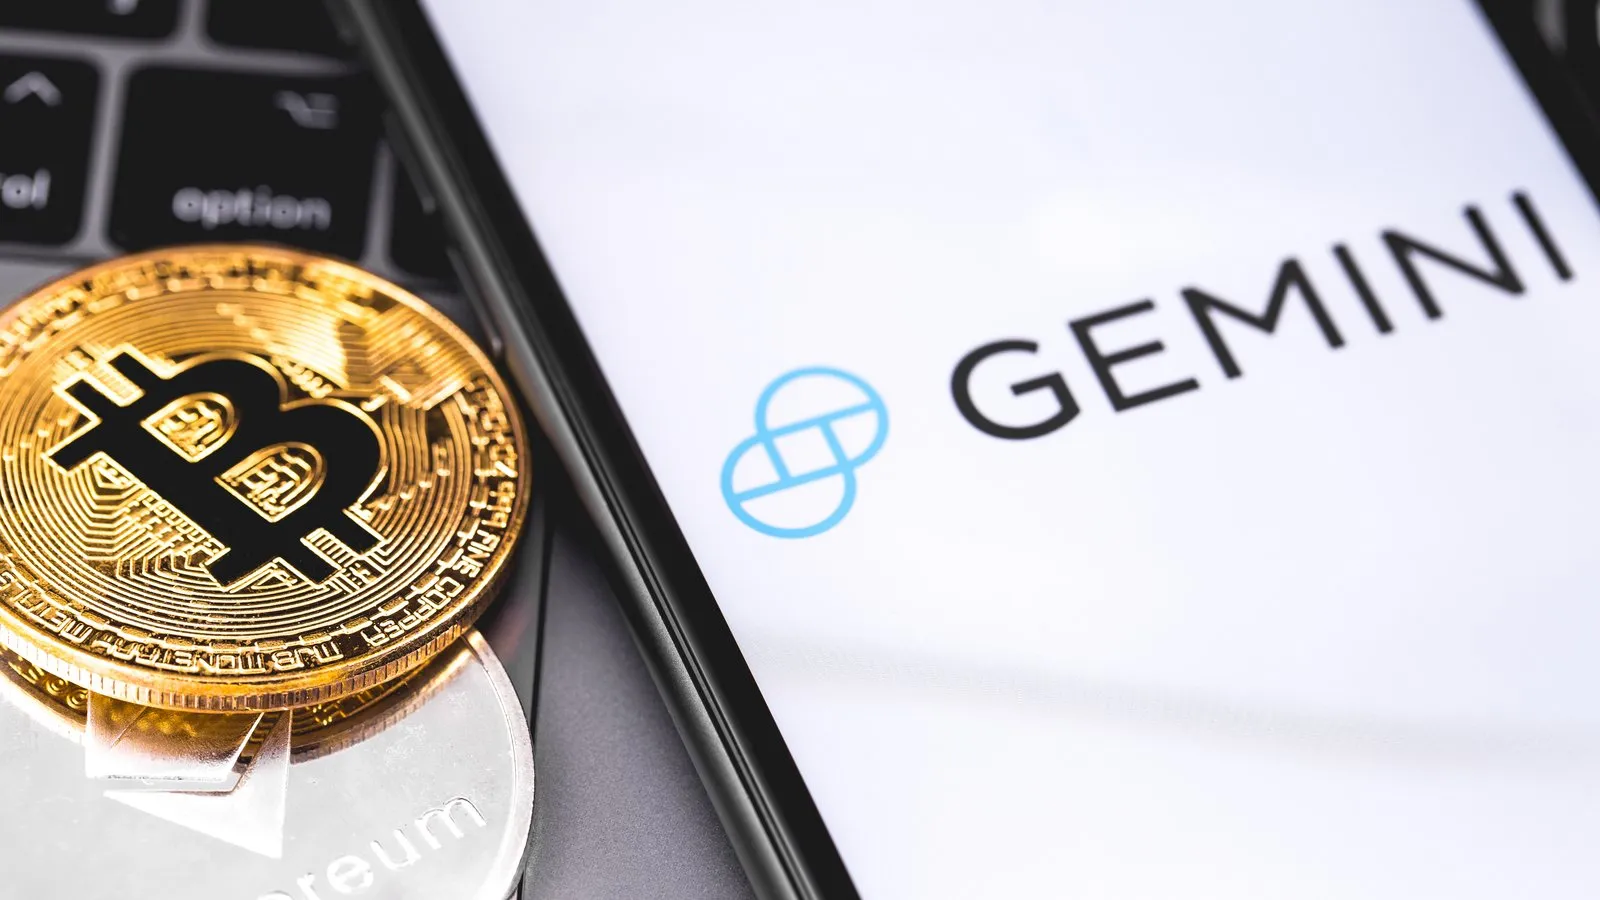 Gemini es una plataforma de intercambio de criptomonedas con sede en Estados Unidos. Imagen: Shutterstock.